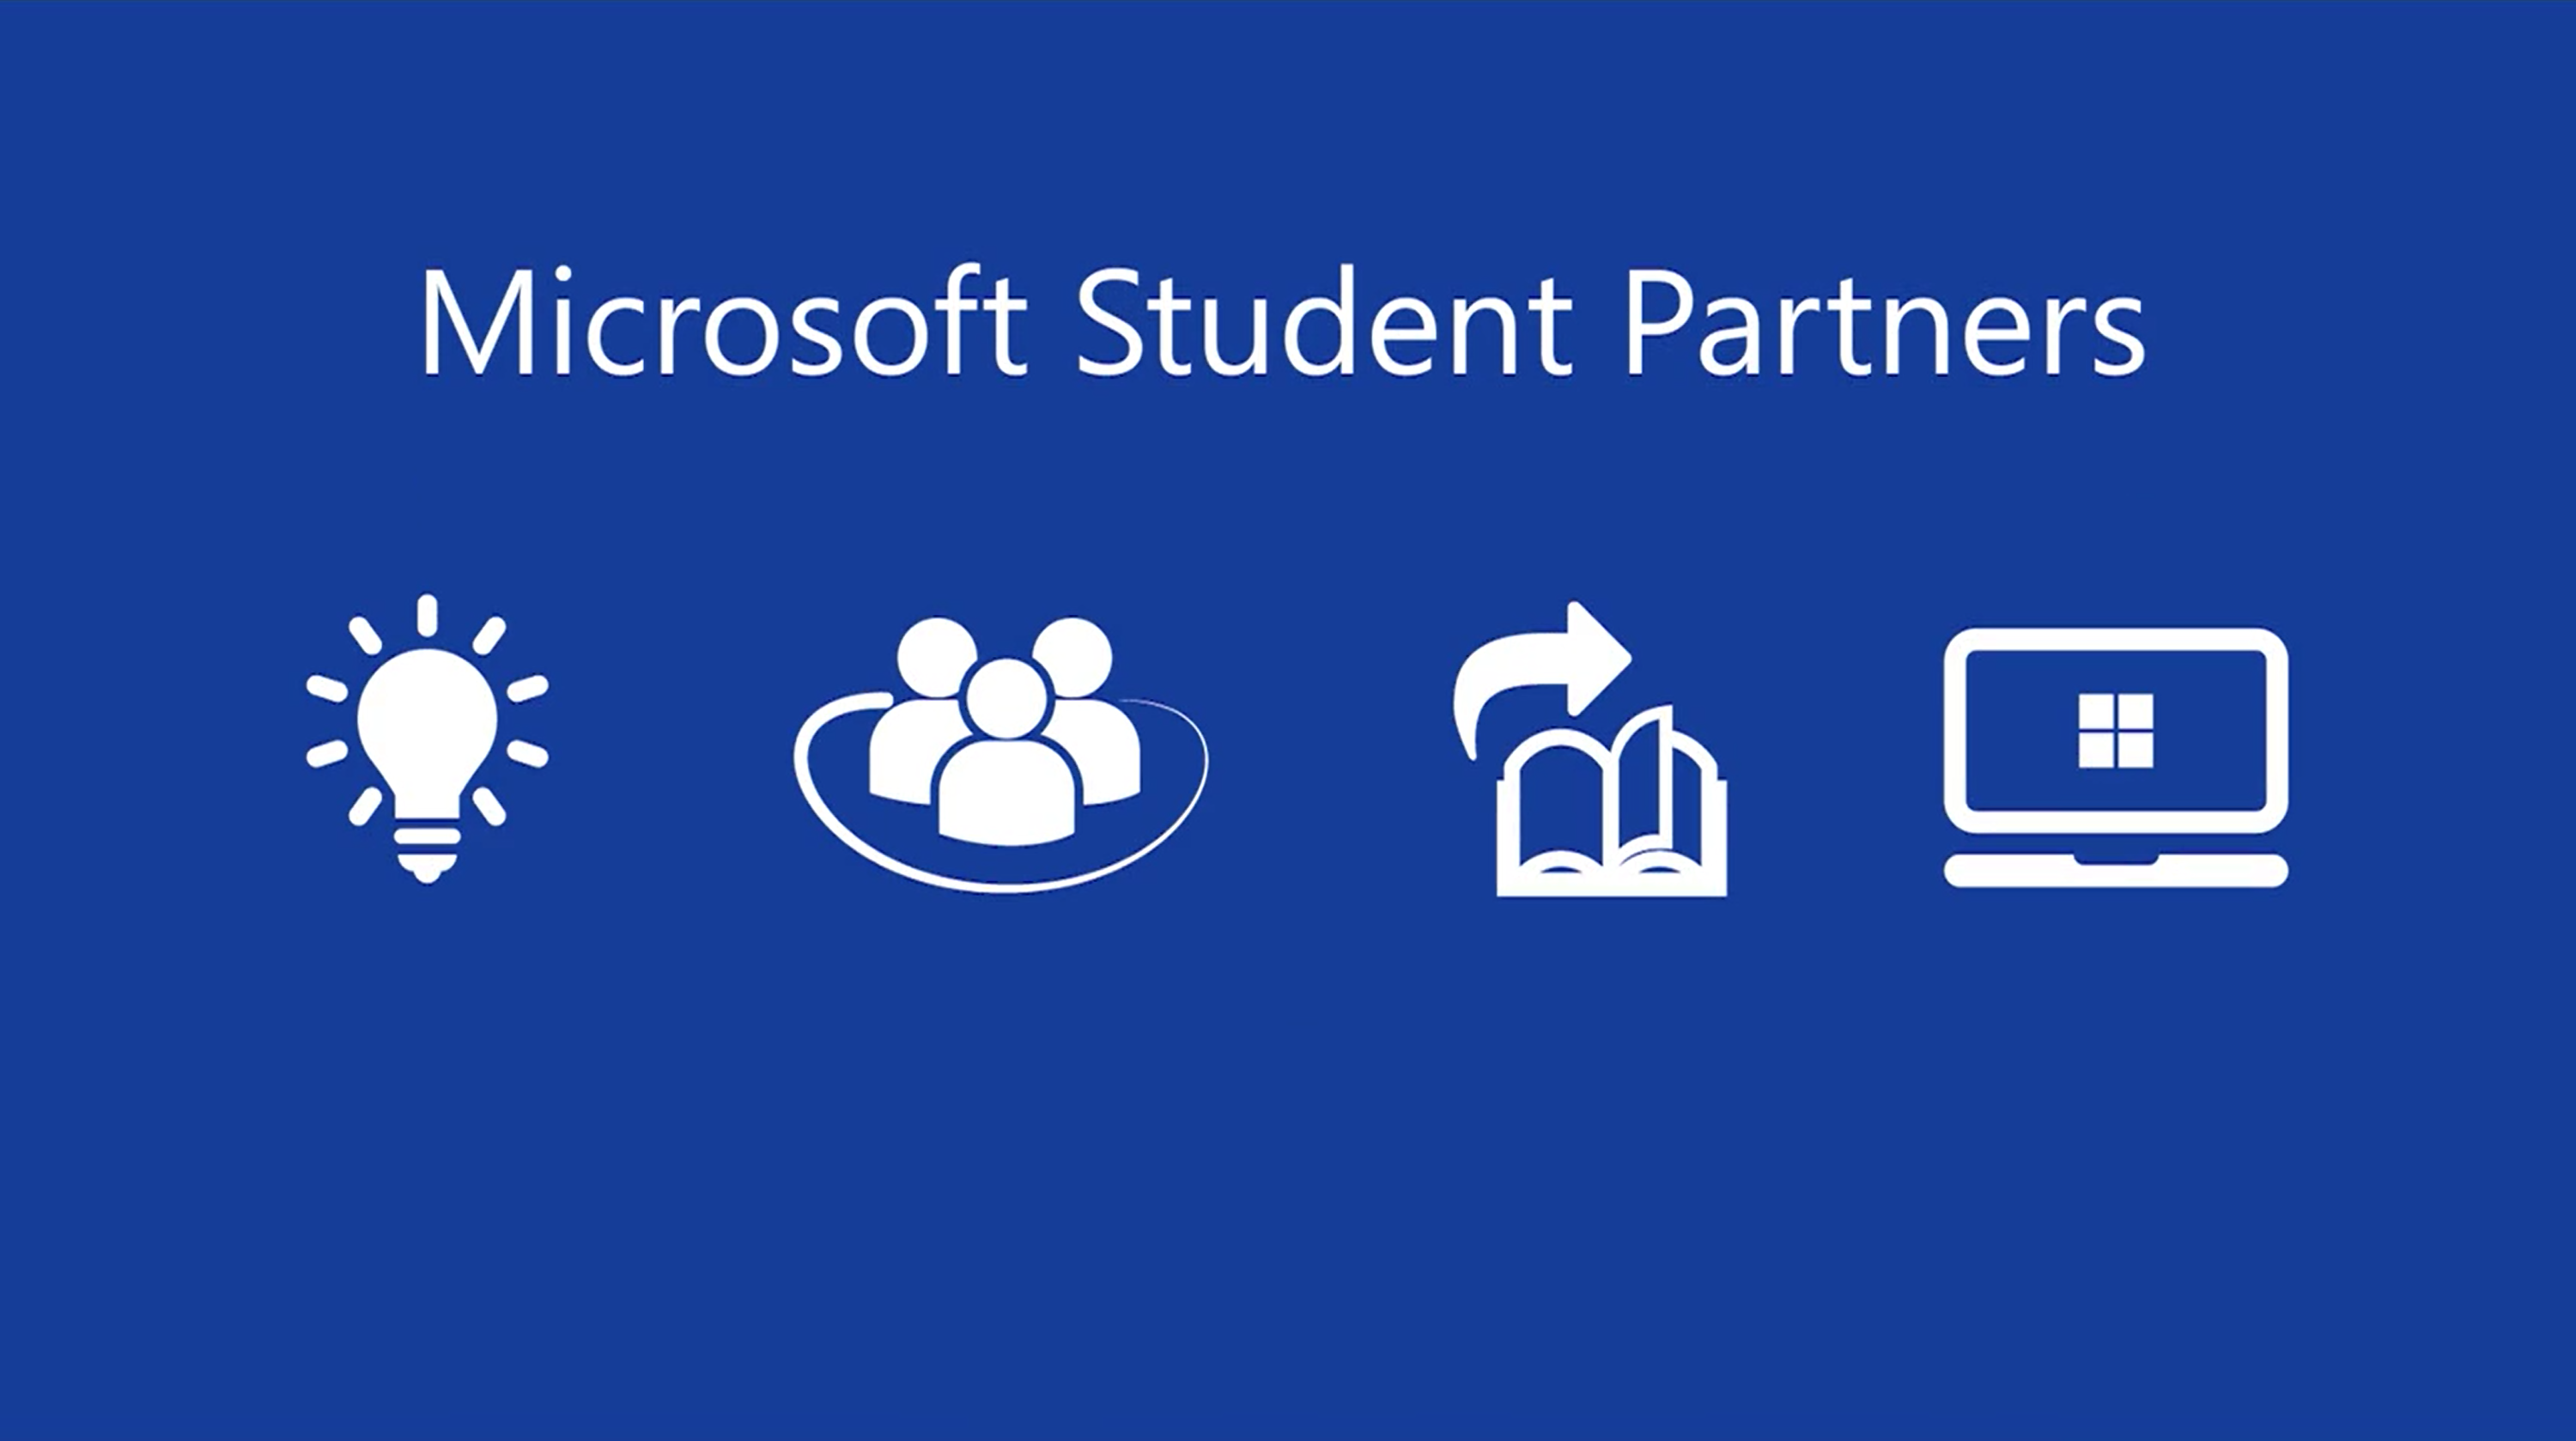 Microsoft Student Partners – Impressionen in Ton und Farbe